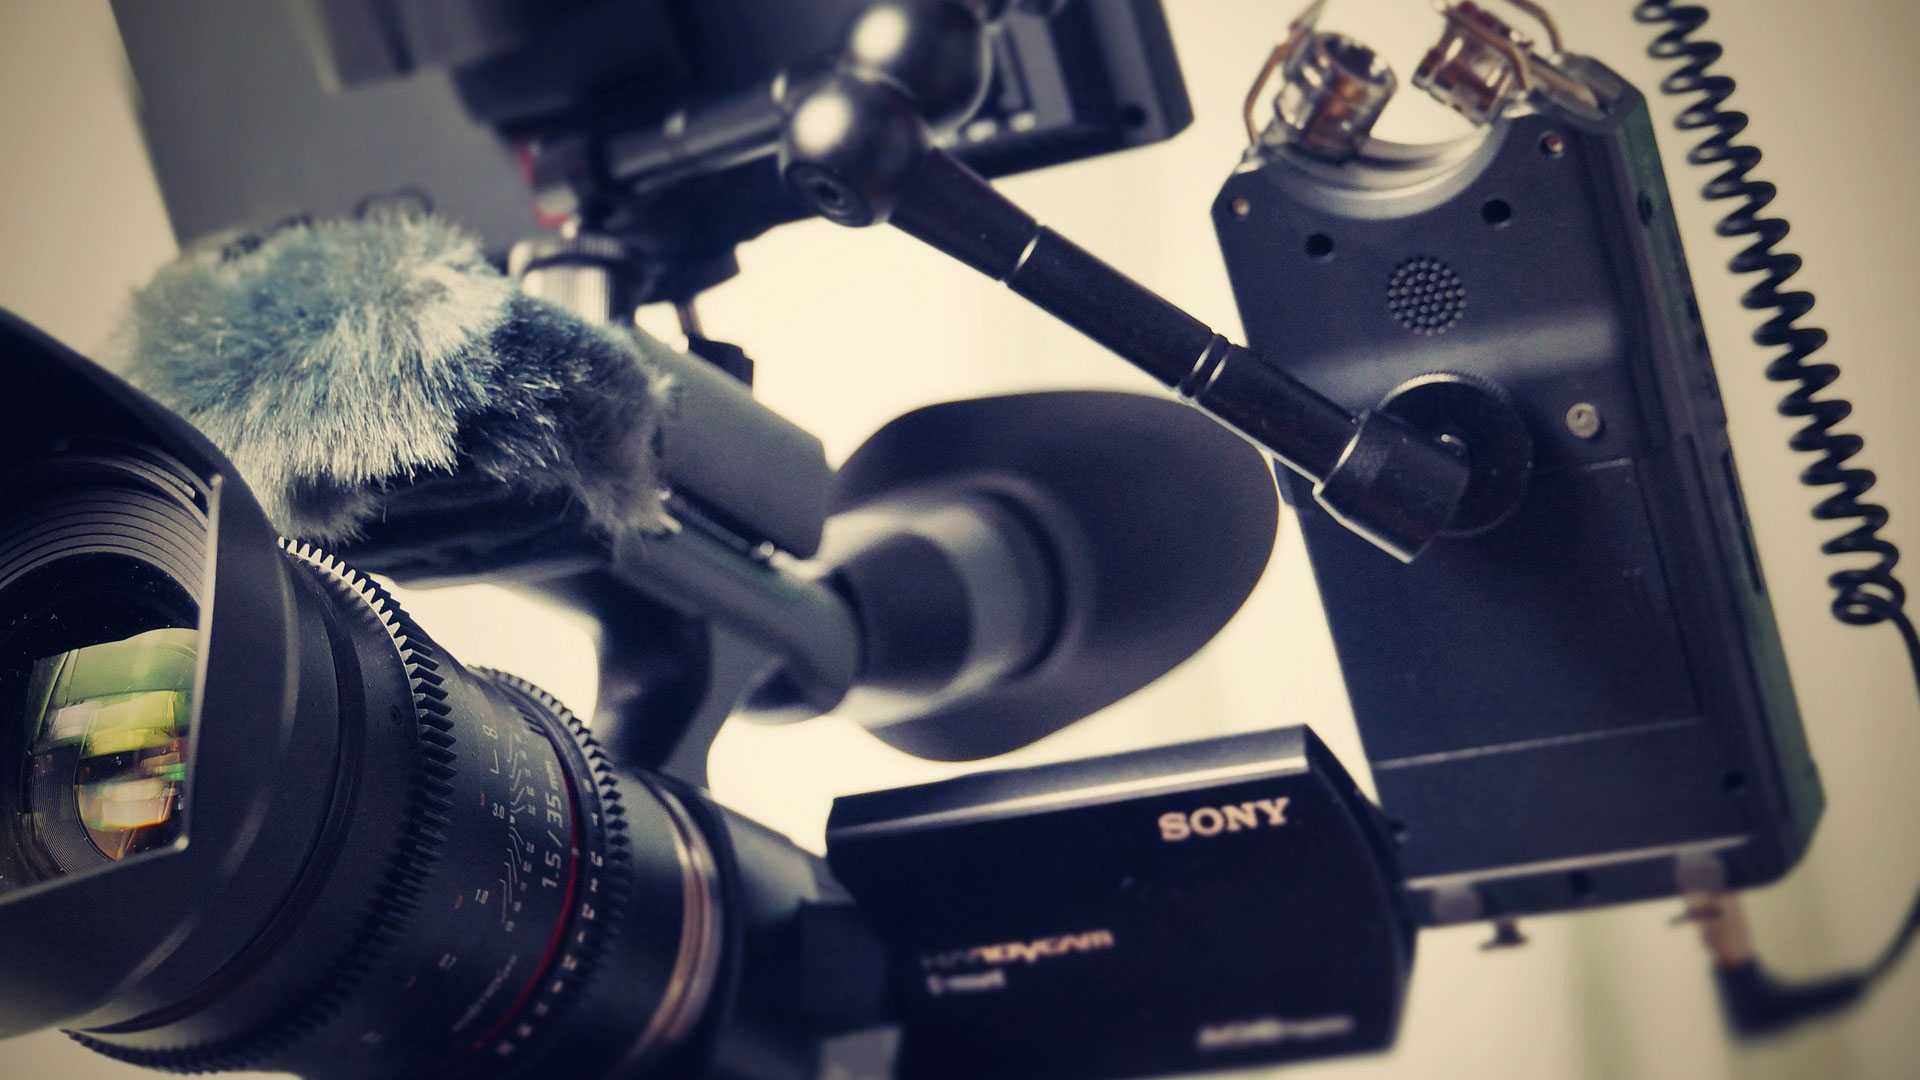 Detailaufnahme einer Sony-Kamera beim Fimdreh